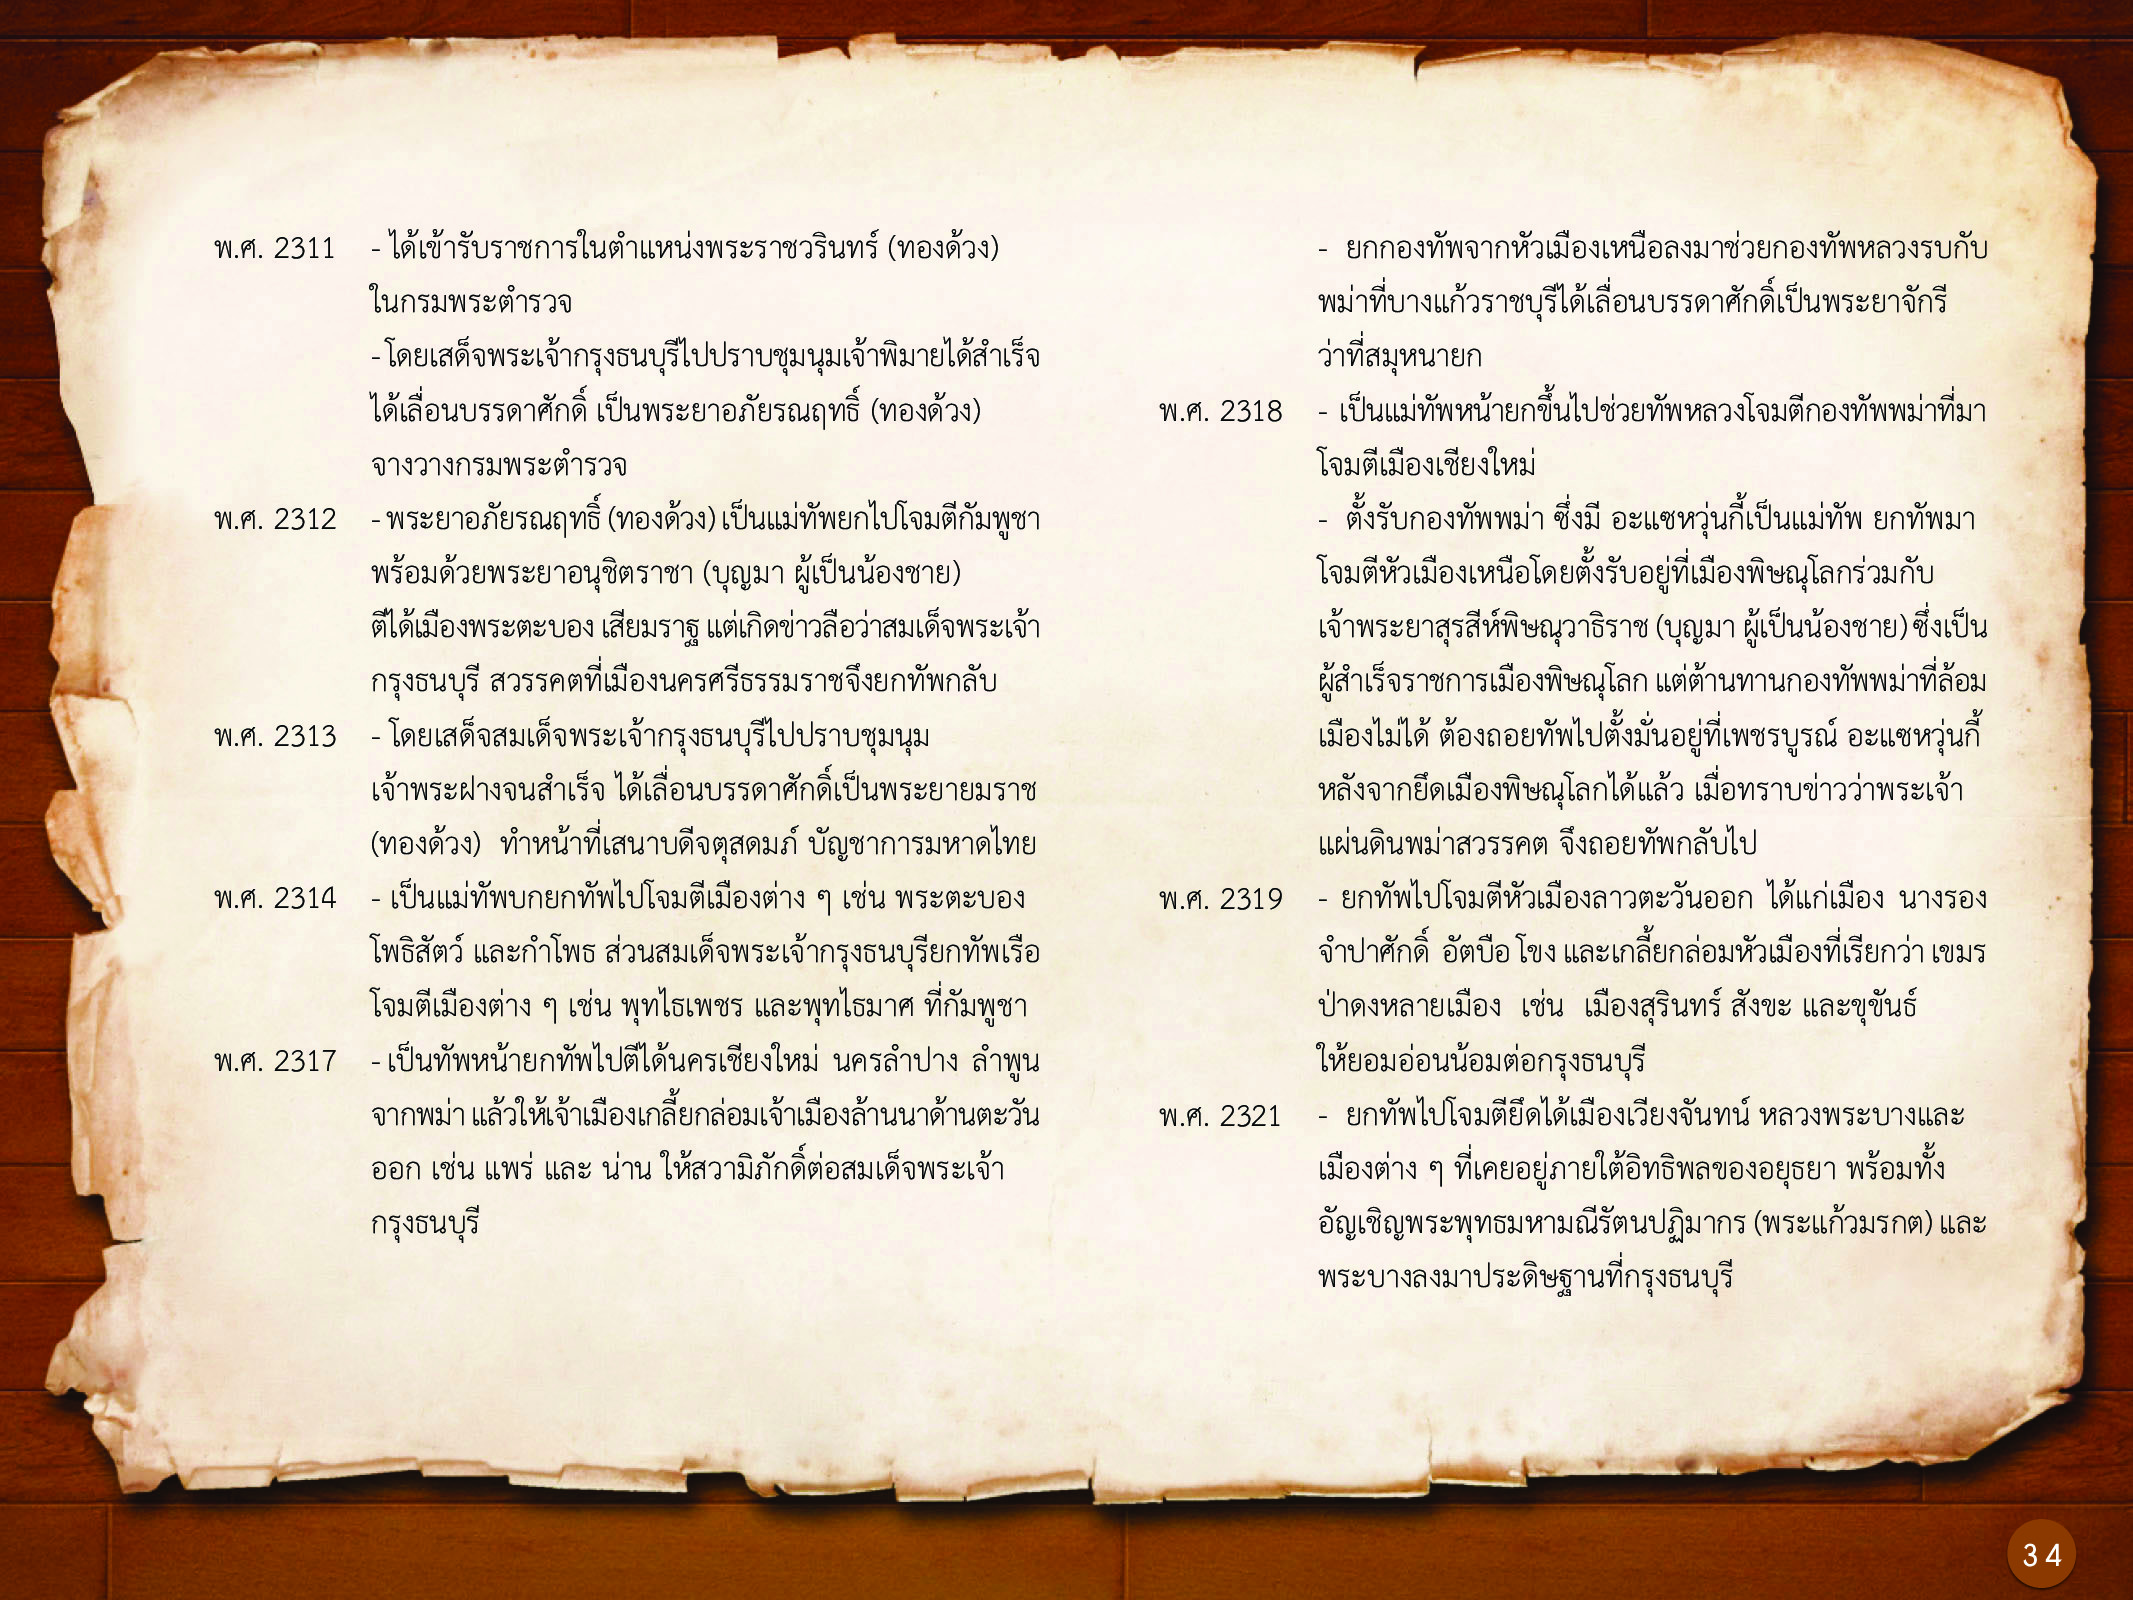 ประวัติศาสตร์กรุงธนบุรี ./images/history_dhonburi/34.jpg